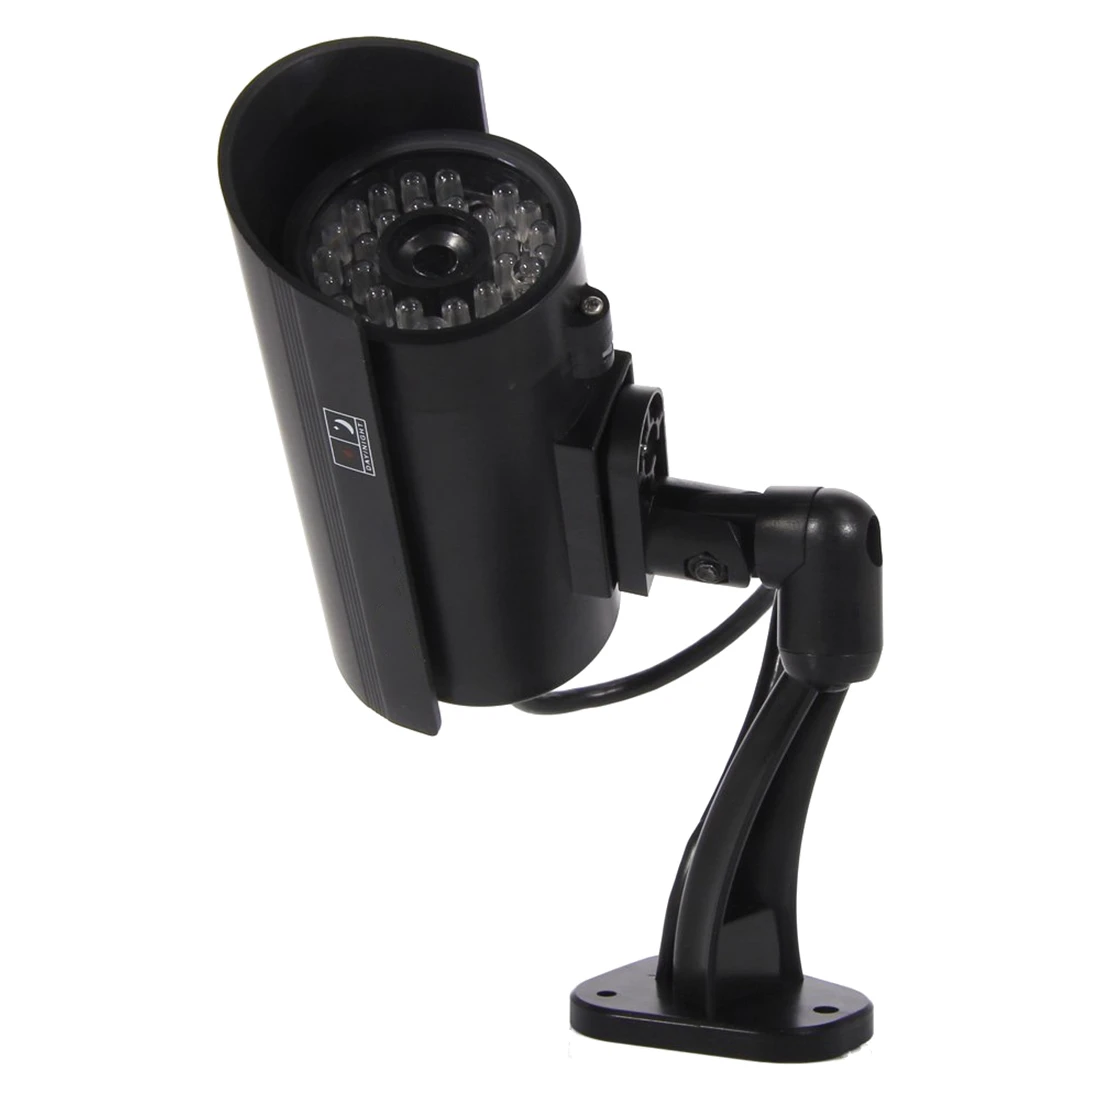 Охранное наблюдение поддельный обманный ИК светодиодный камера s-Night/дневное видение вид пуля система видеонаблюдения CCD имитация манекен